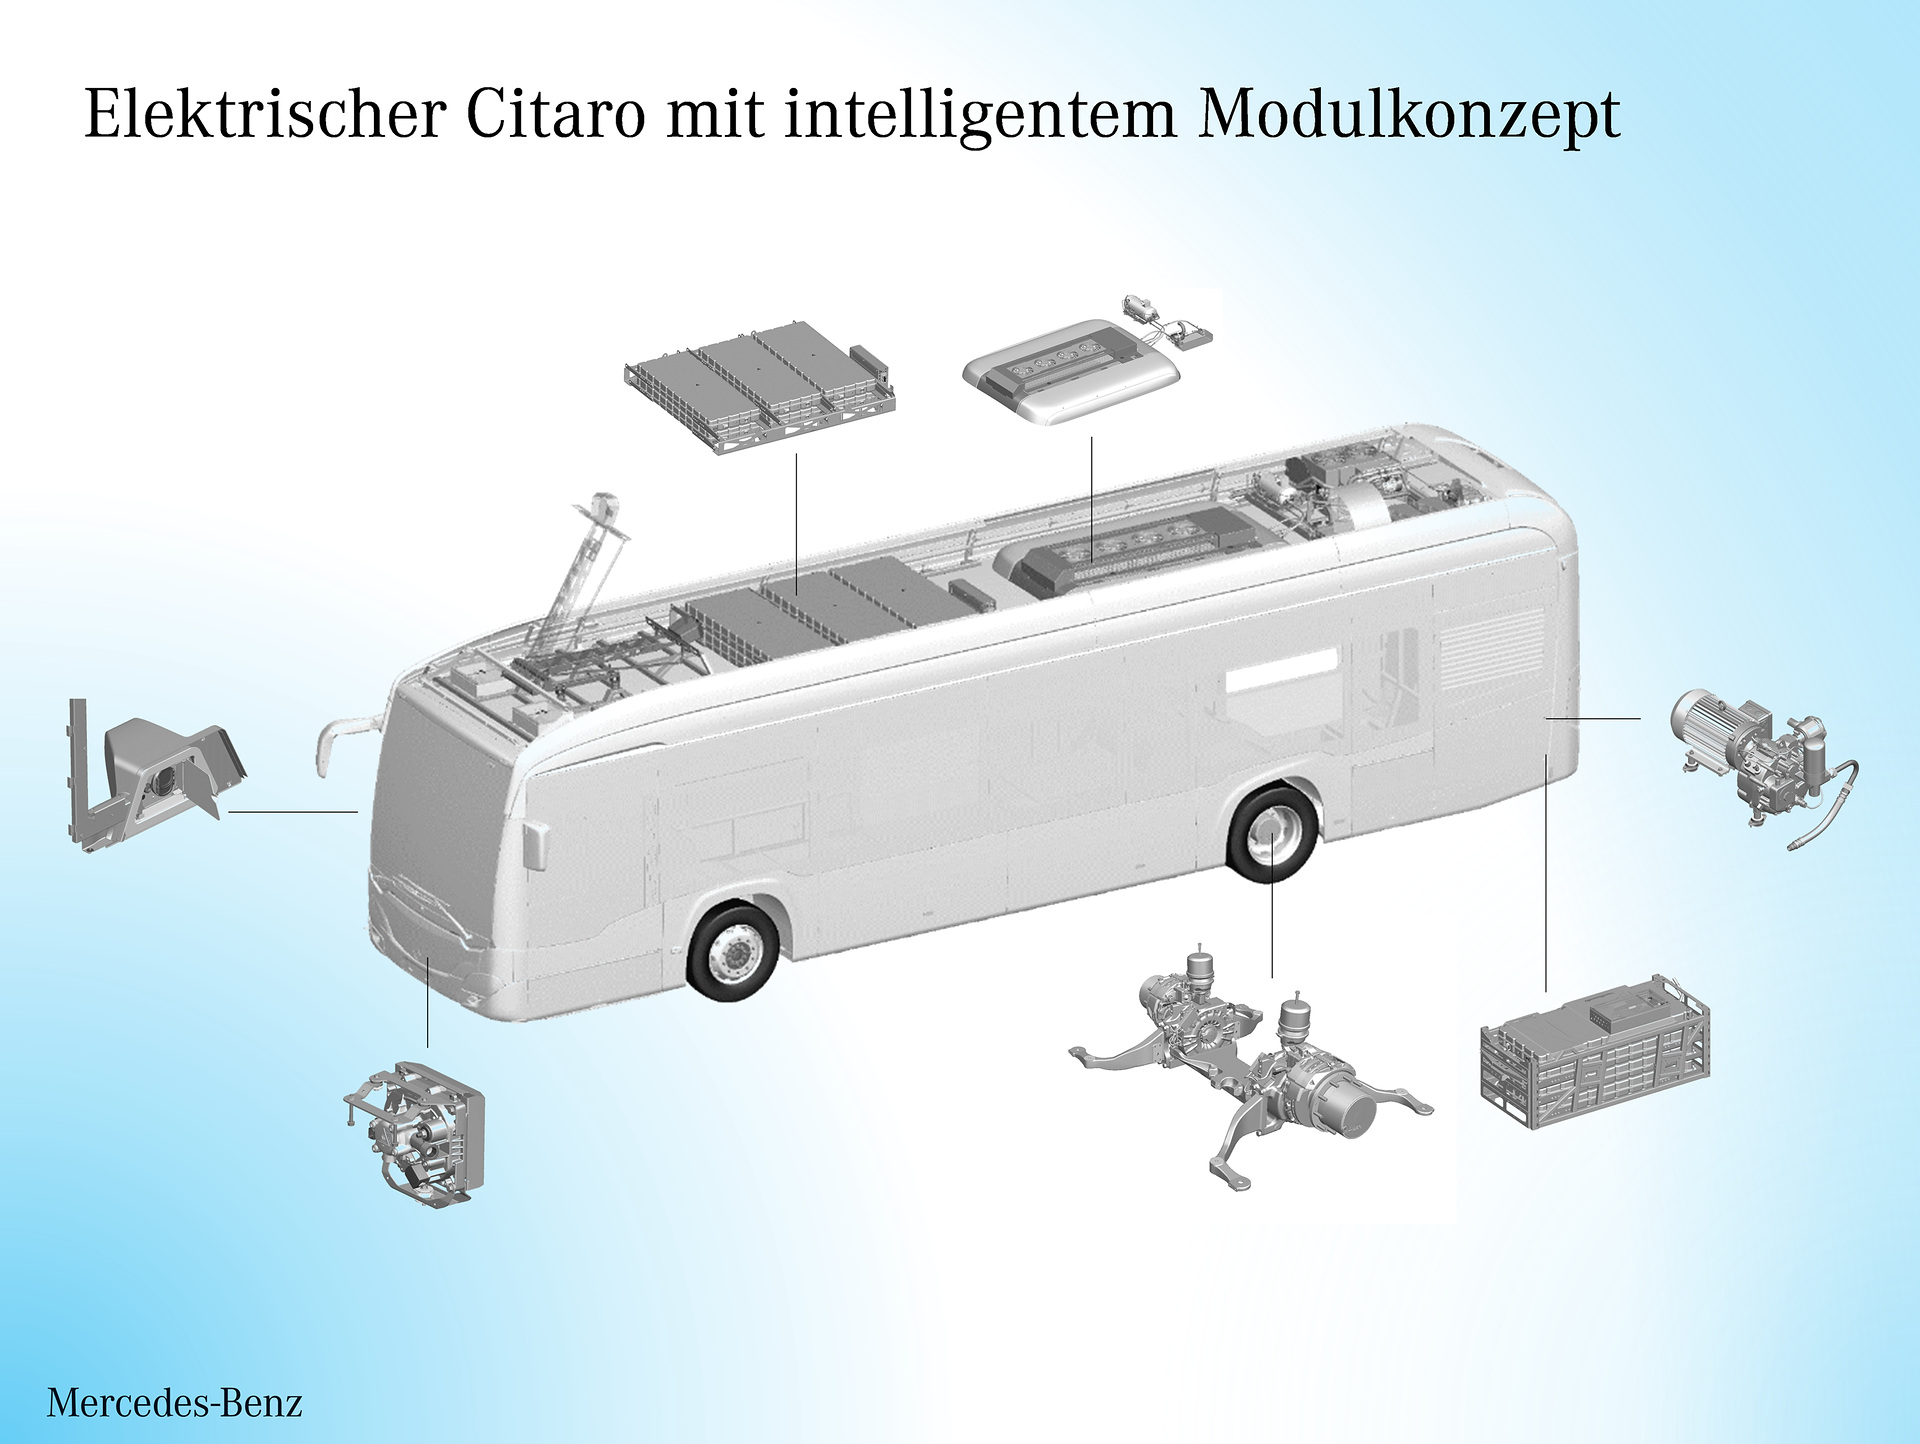 Mercedes-Benz Citaro mit vollelektrischem Antrieb: eWorkshop: Der Mercedes-Benz Citaro fährt elektrisch